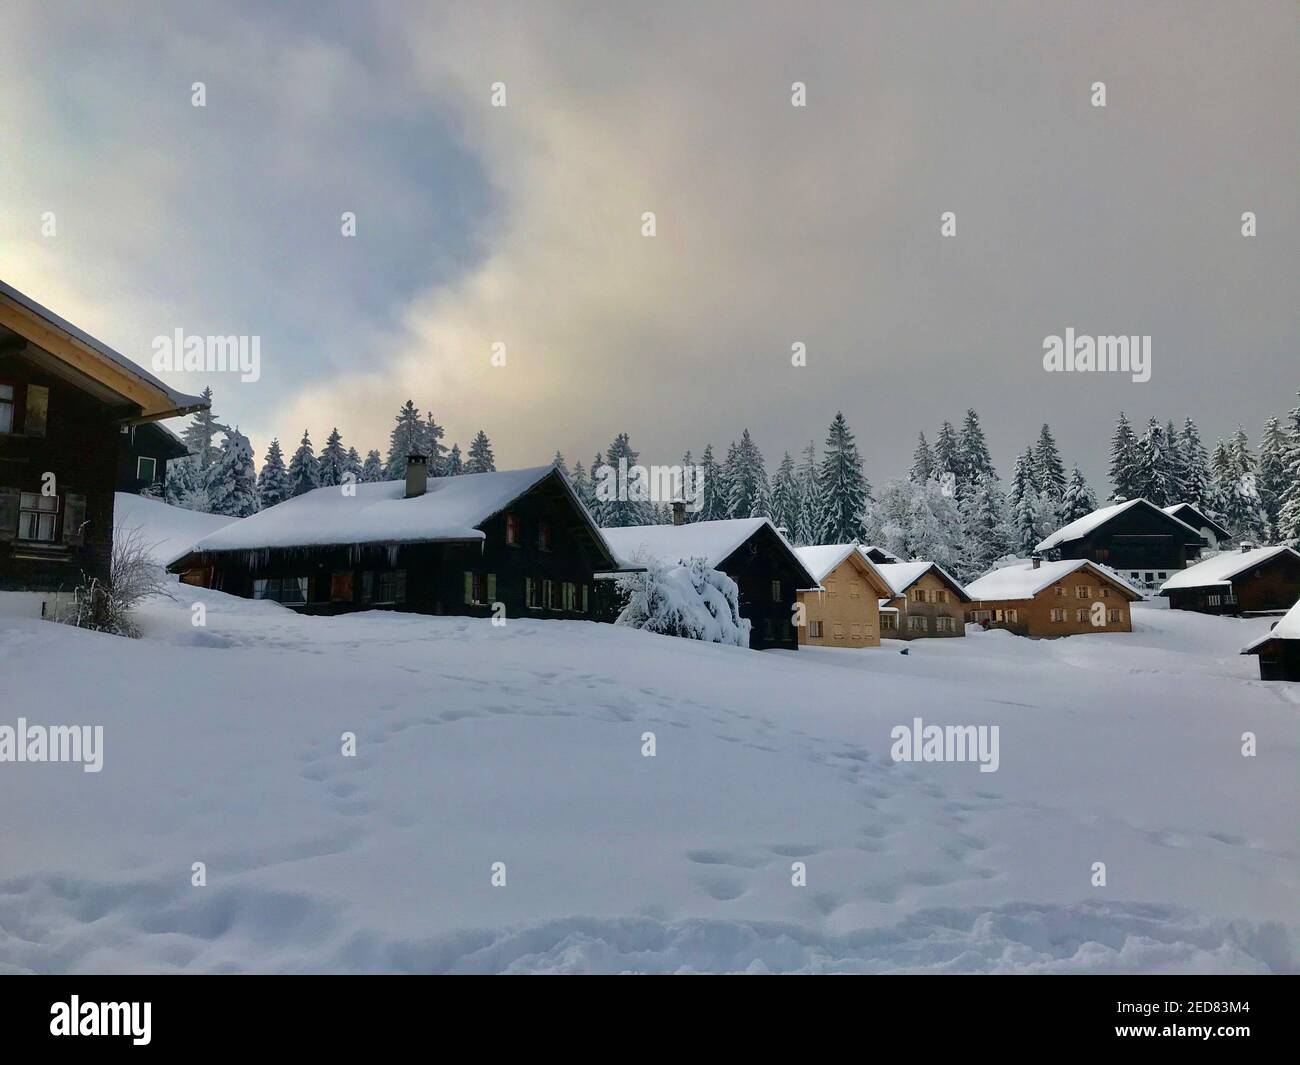 Les cabanes se trouvent sur la piste de ski fraîchement enneigée. village de vacances avec maisons en bois alpin en face d'une forêt de sapins enneigés. Bödele Banque D'Images